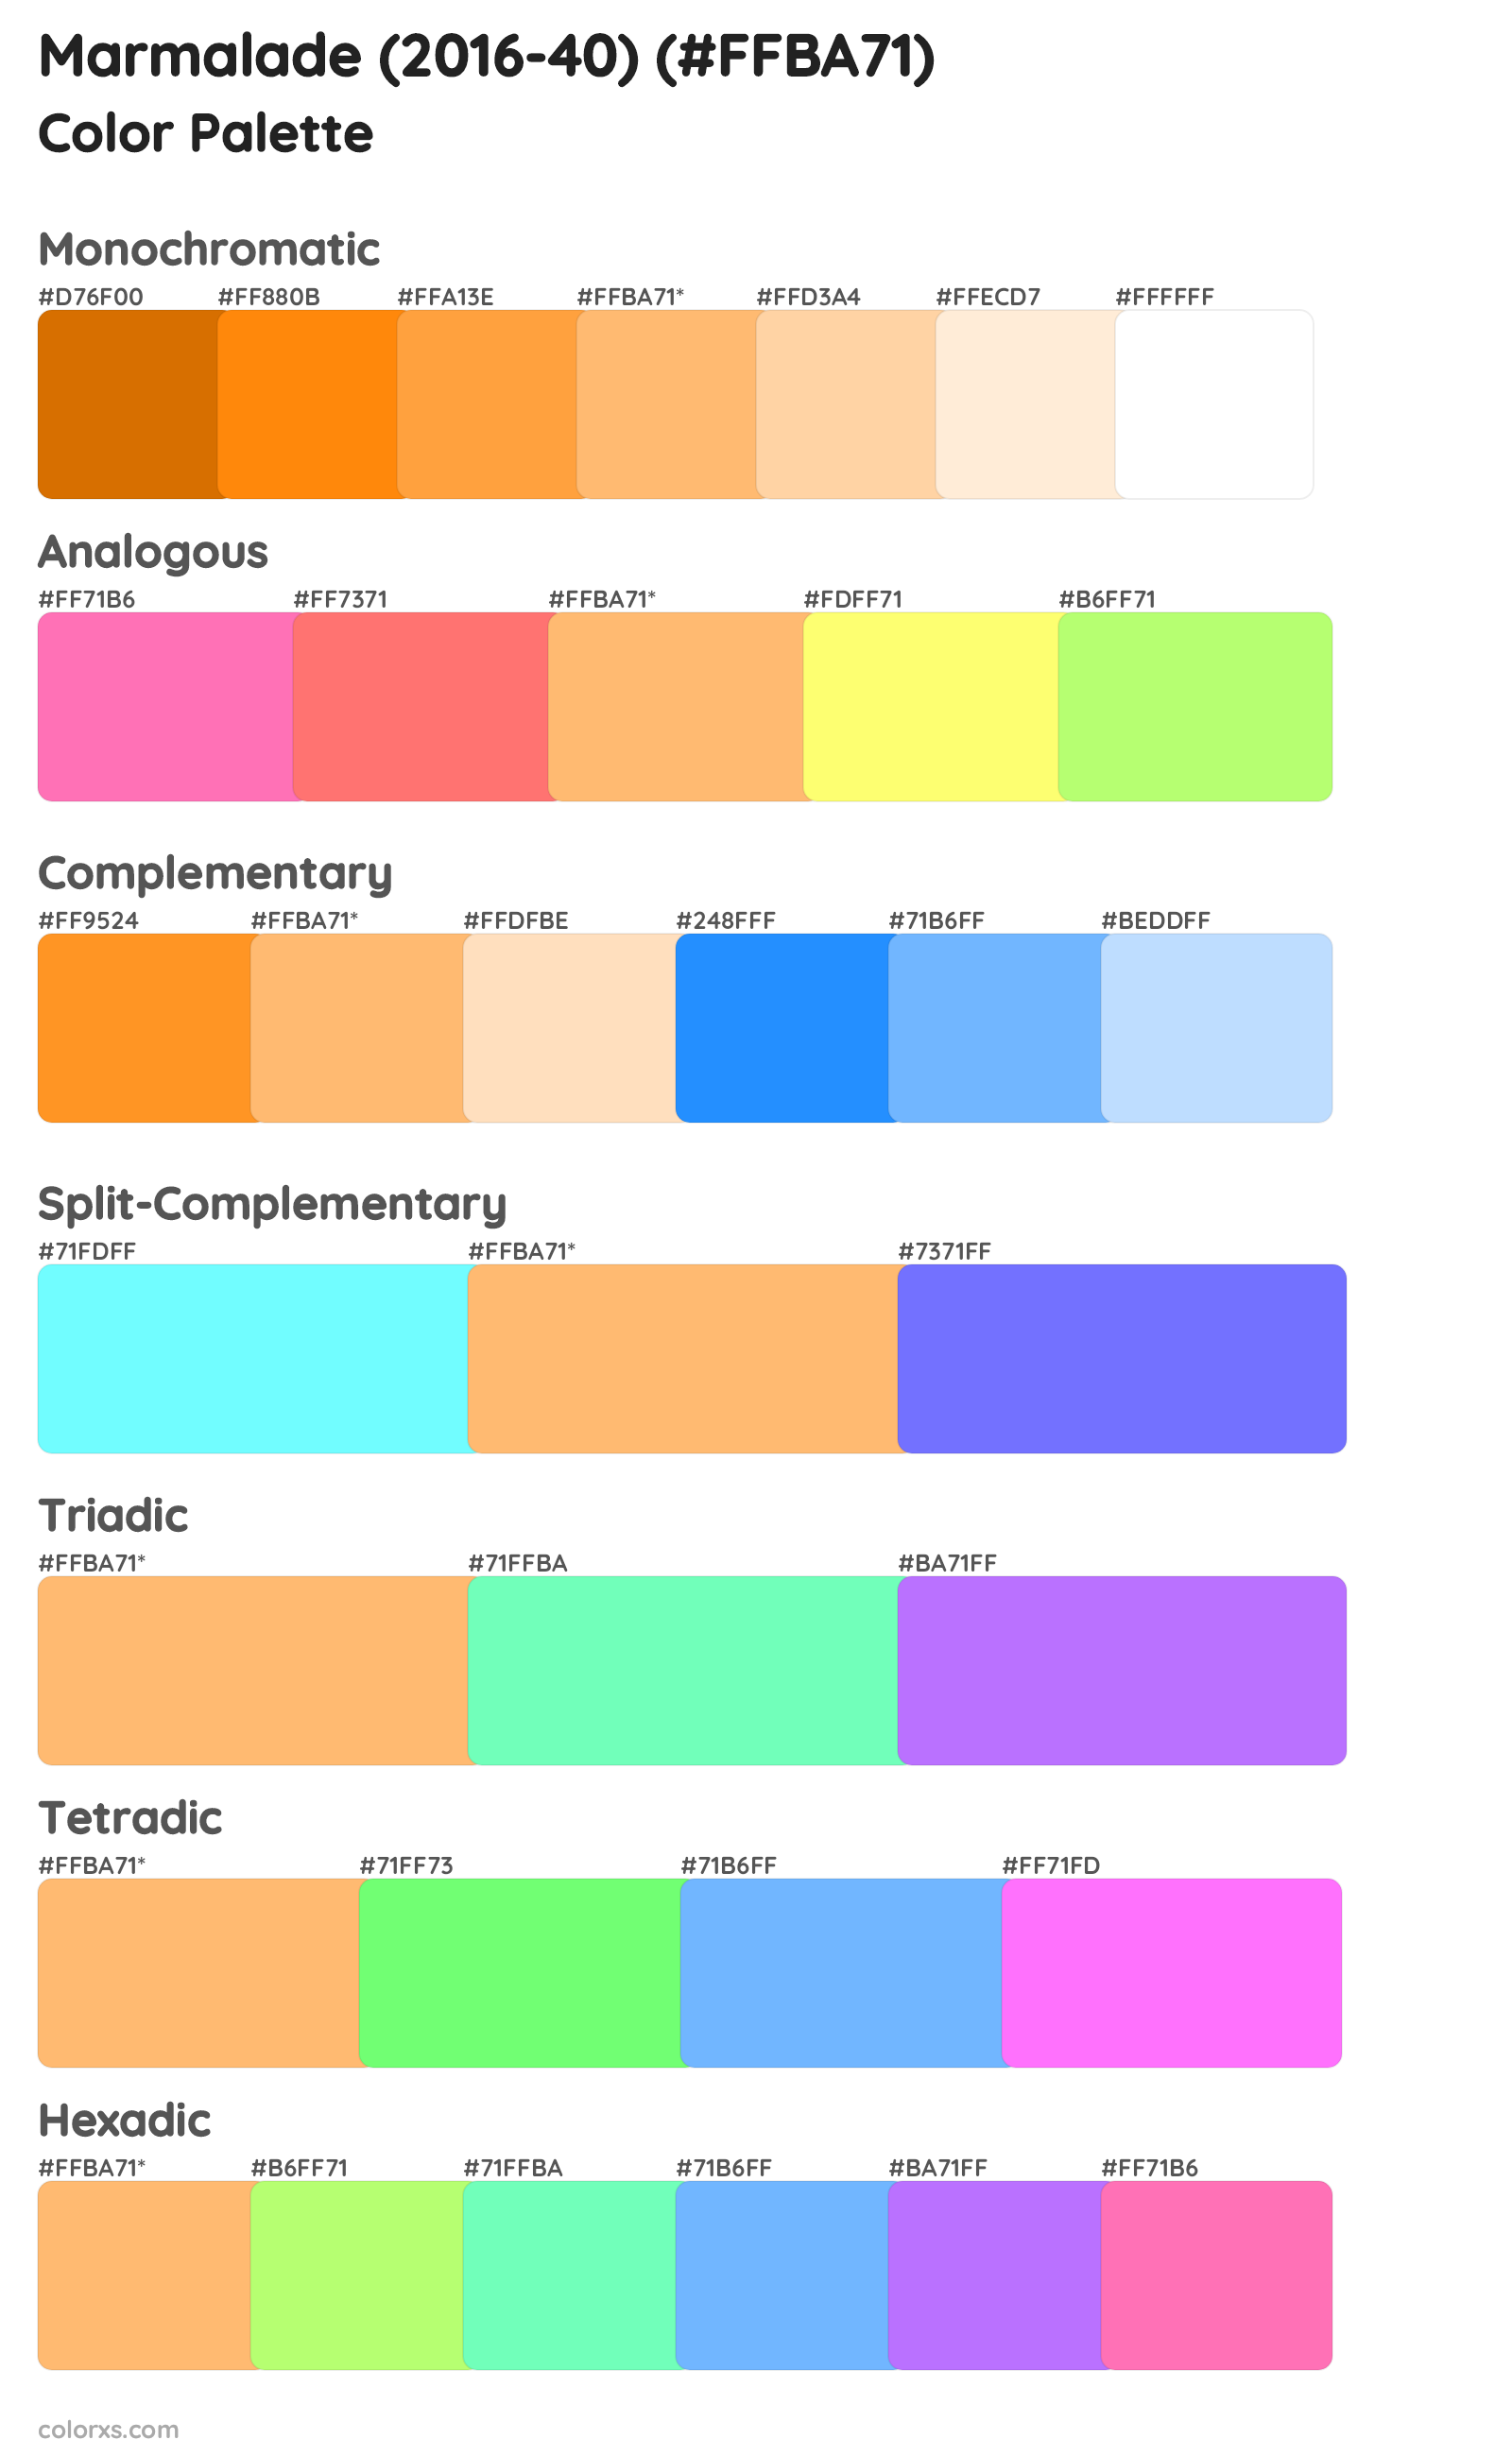 Marmalade (2016-40) Color Scheme Palettes